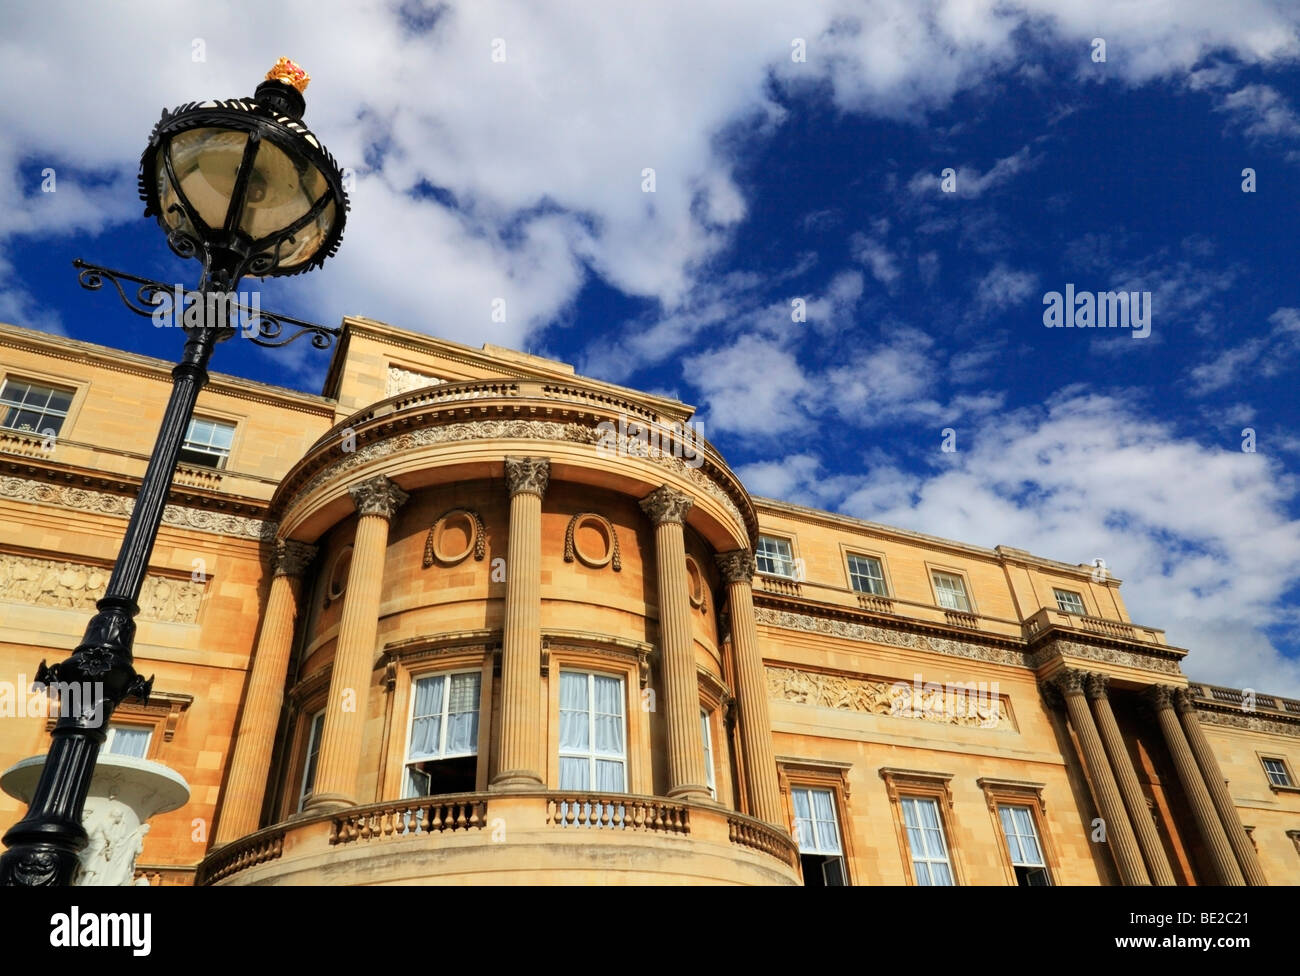 Rear of Buckingham Palace, London, England, UK. Stock Photo